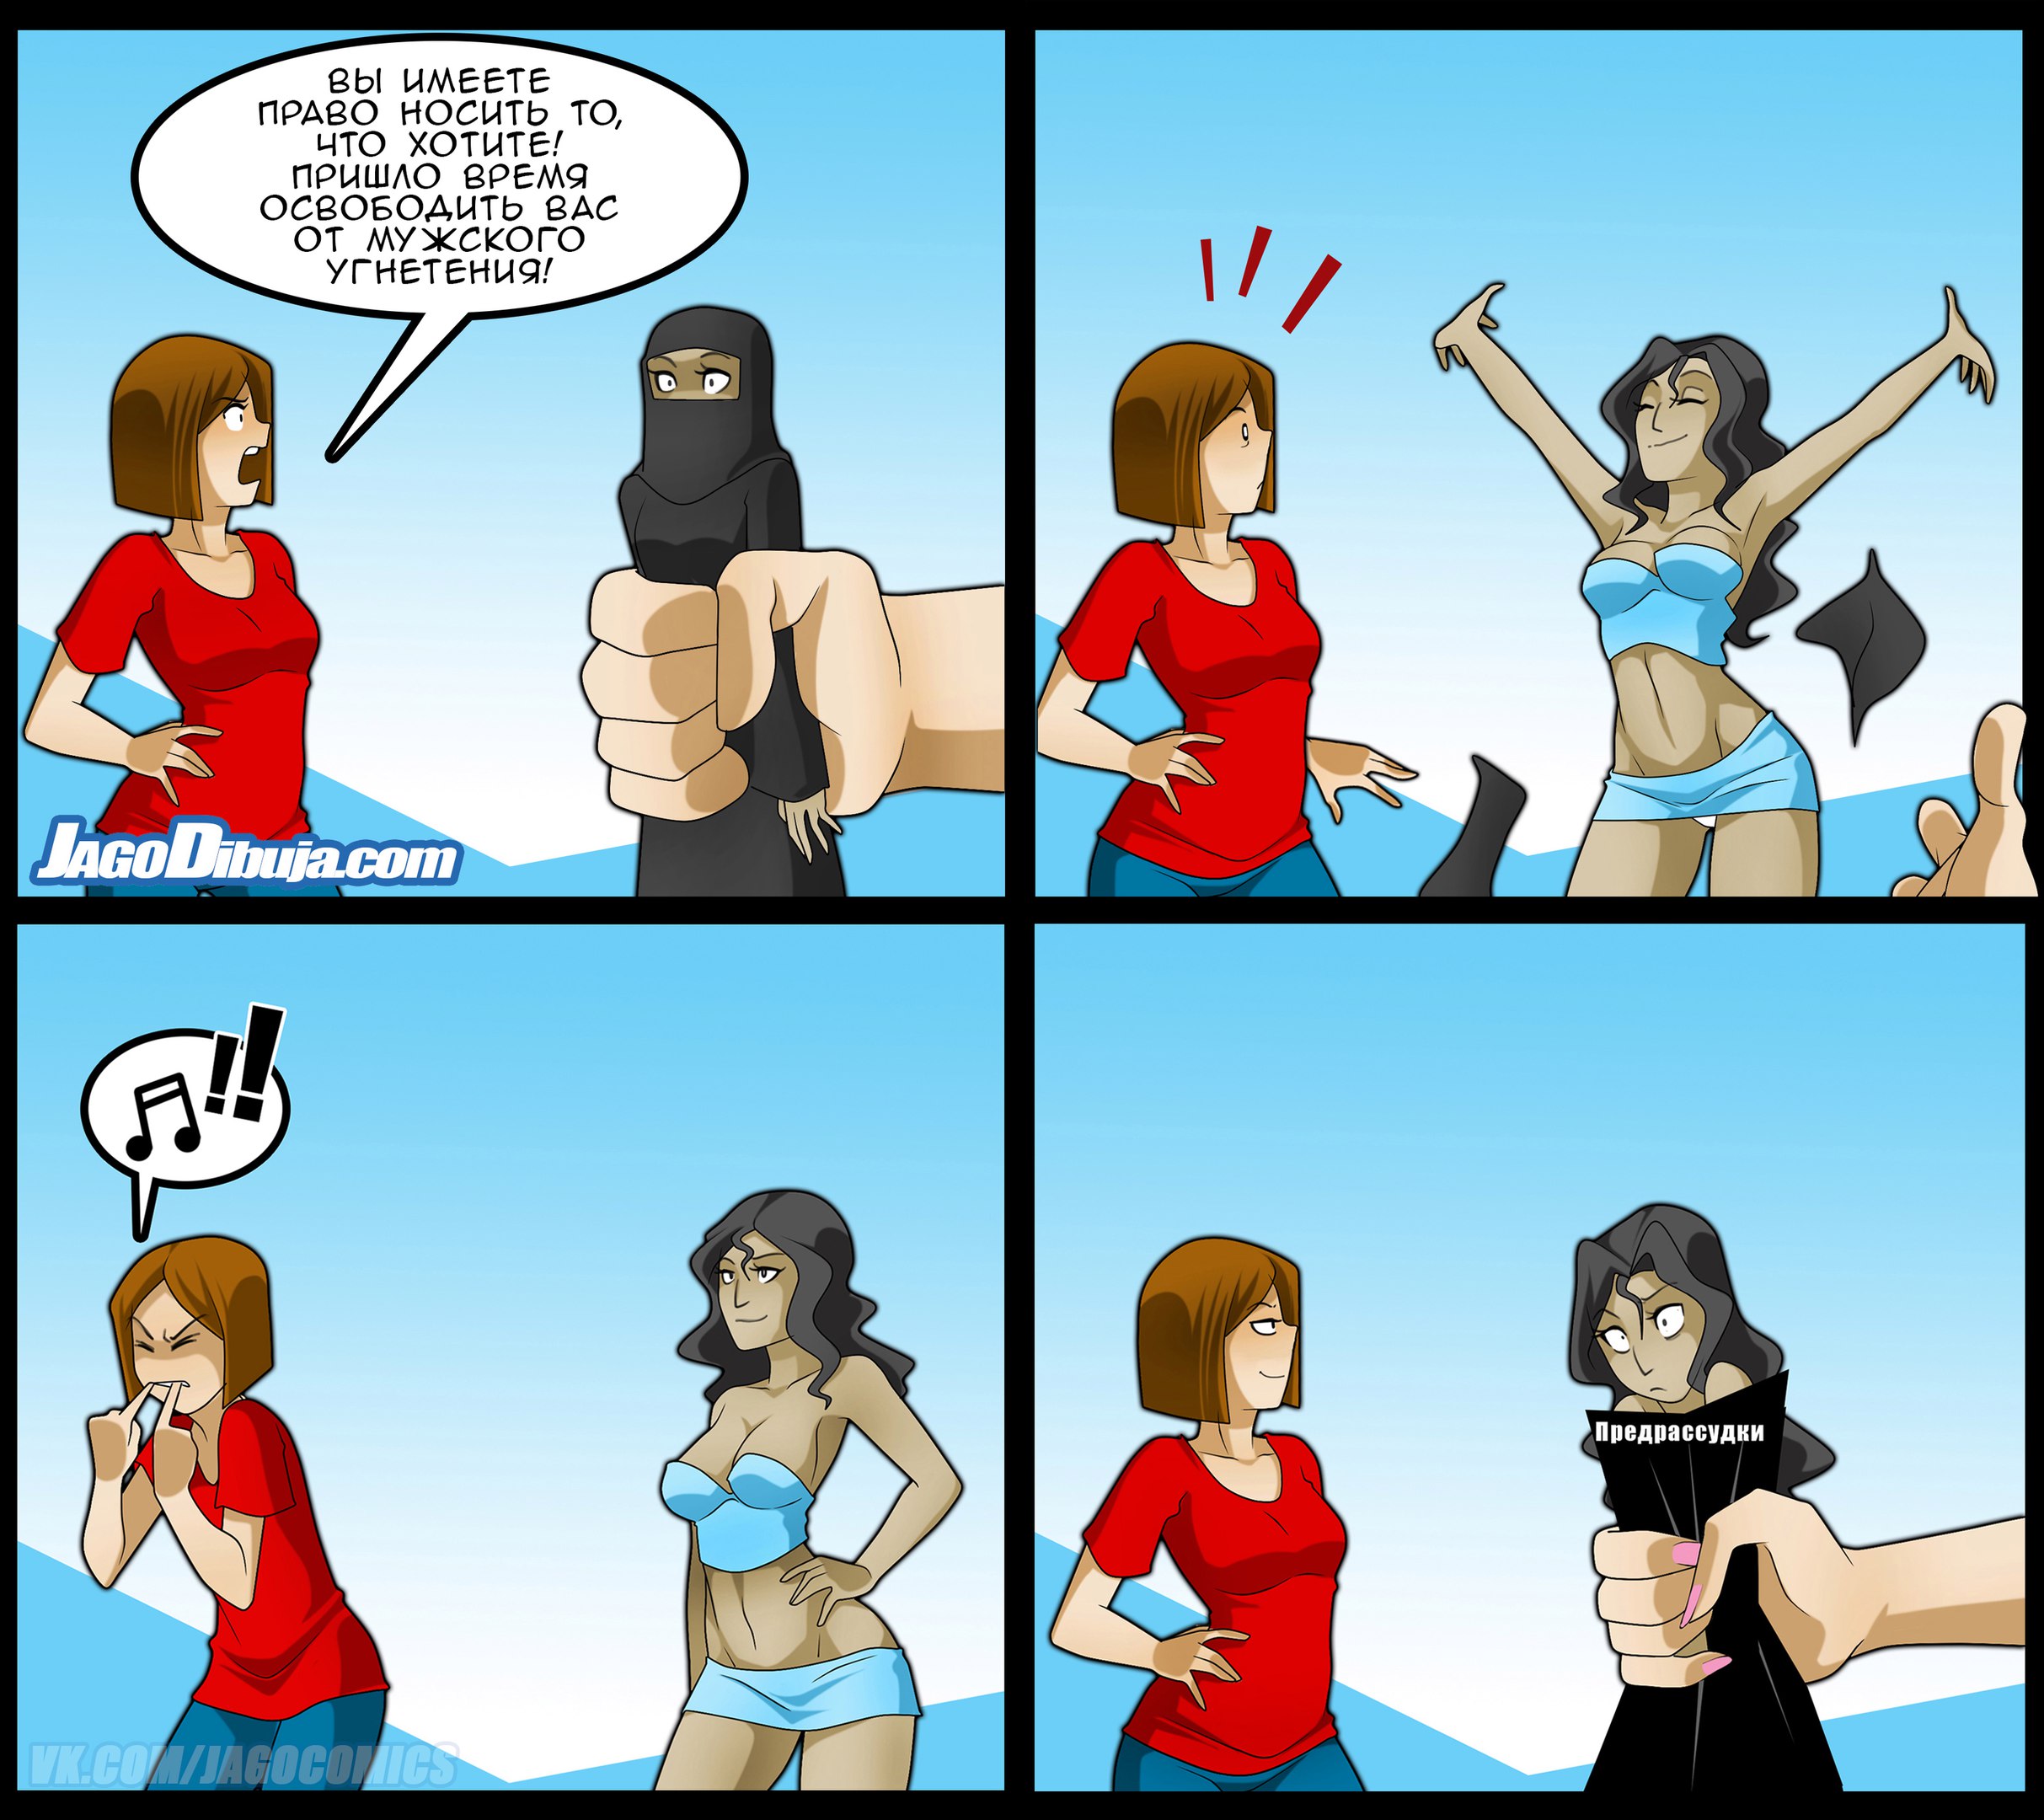 Мой любимый угнетатель 13. Феминизм в комиксах. Комиксы про феминисток. Феминизм приколы. Мемы про феминисток.